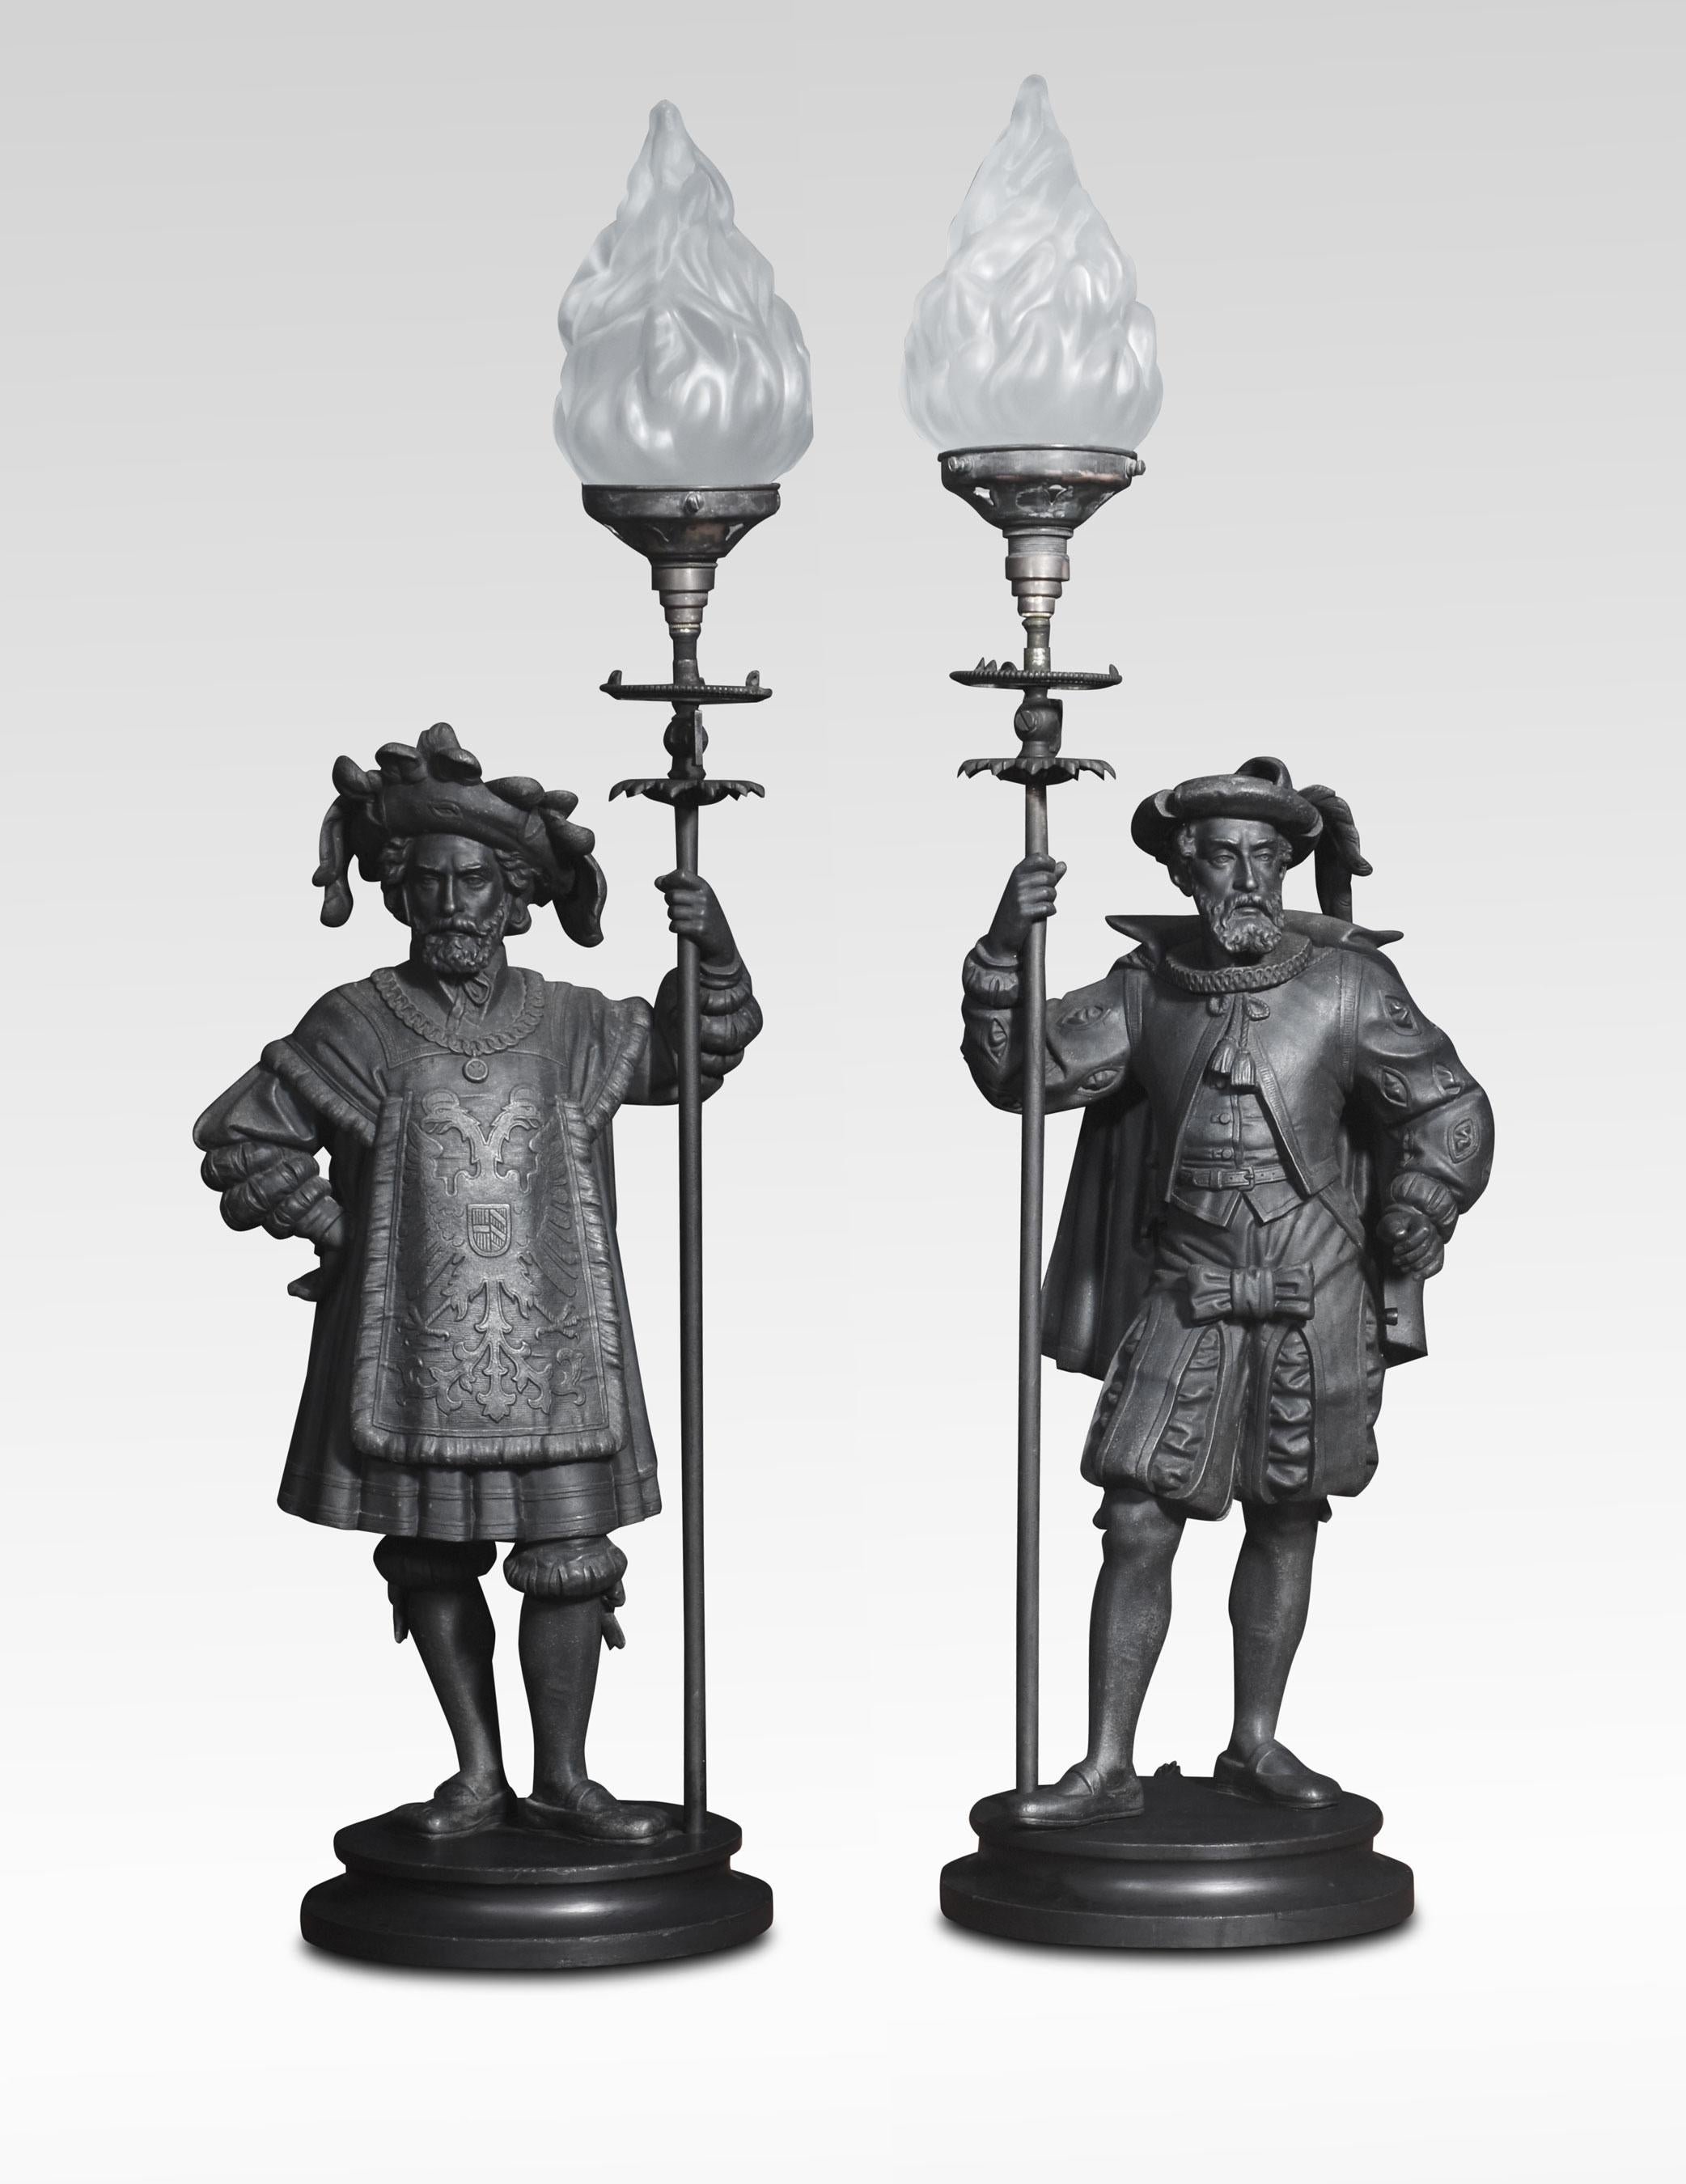 Pair of Medeval lamps